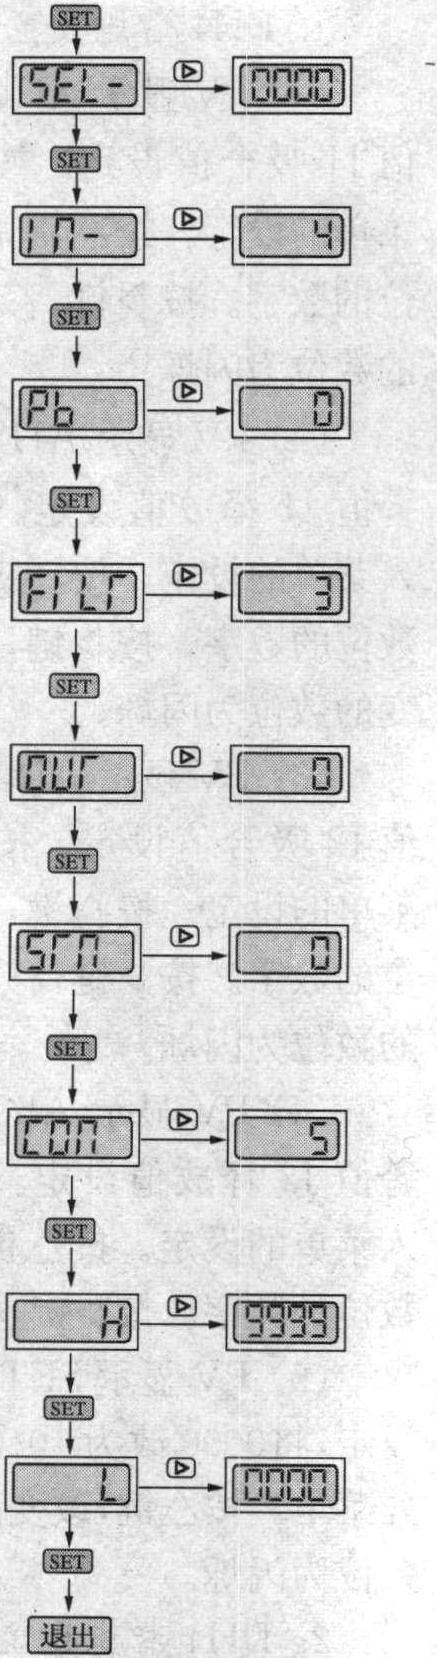 二、DH4智能电流电压表的使用方法